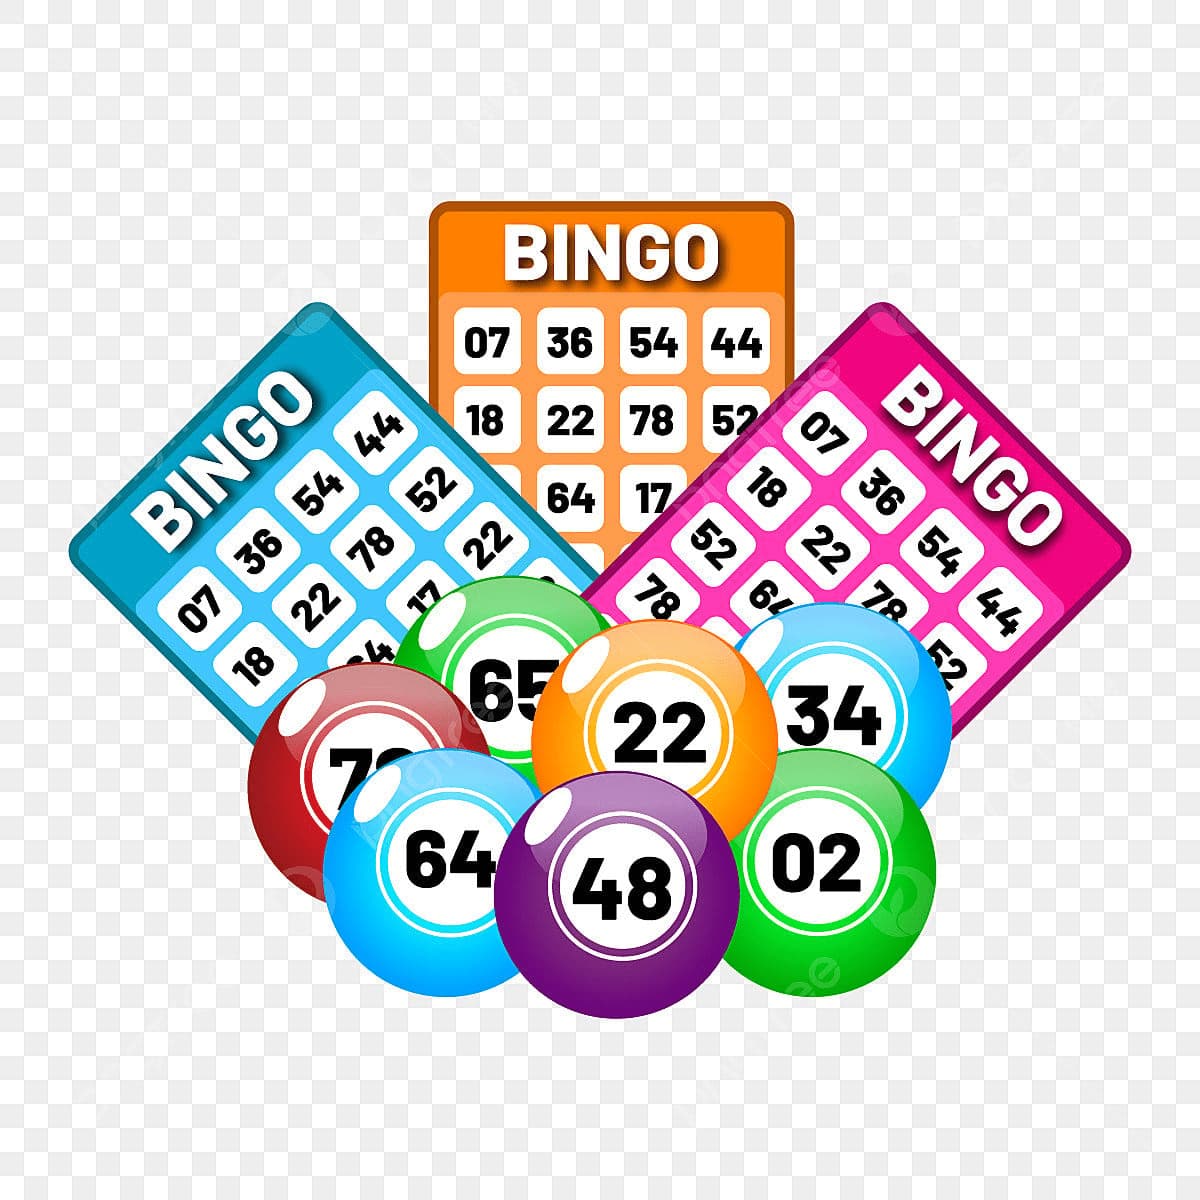 Hướng dẫn luật chơi Bingo chi tiết